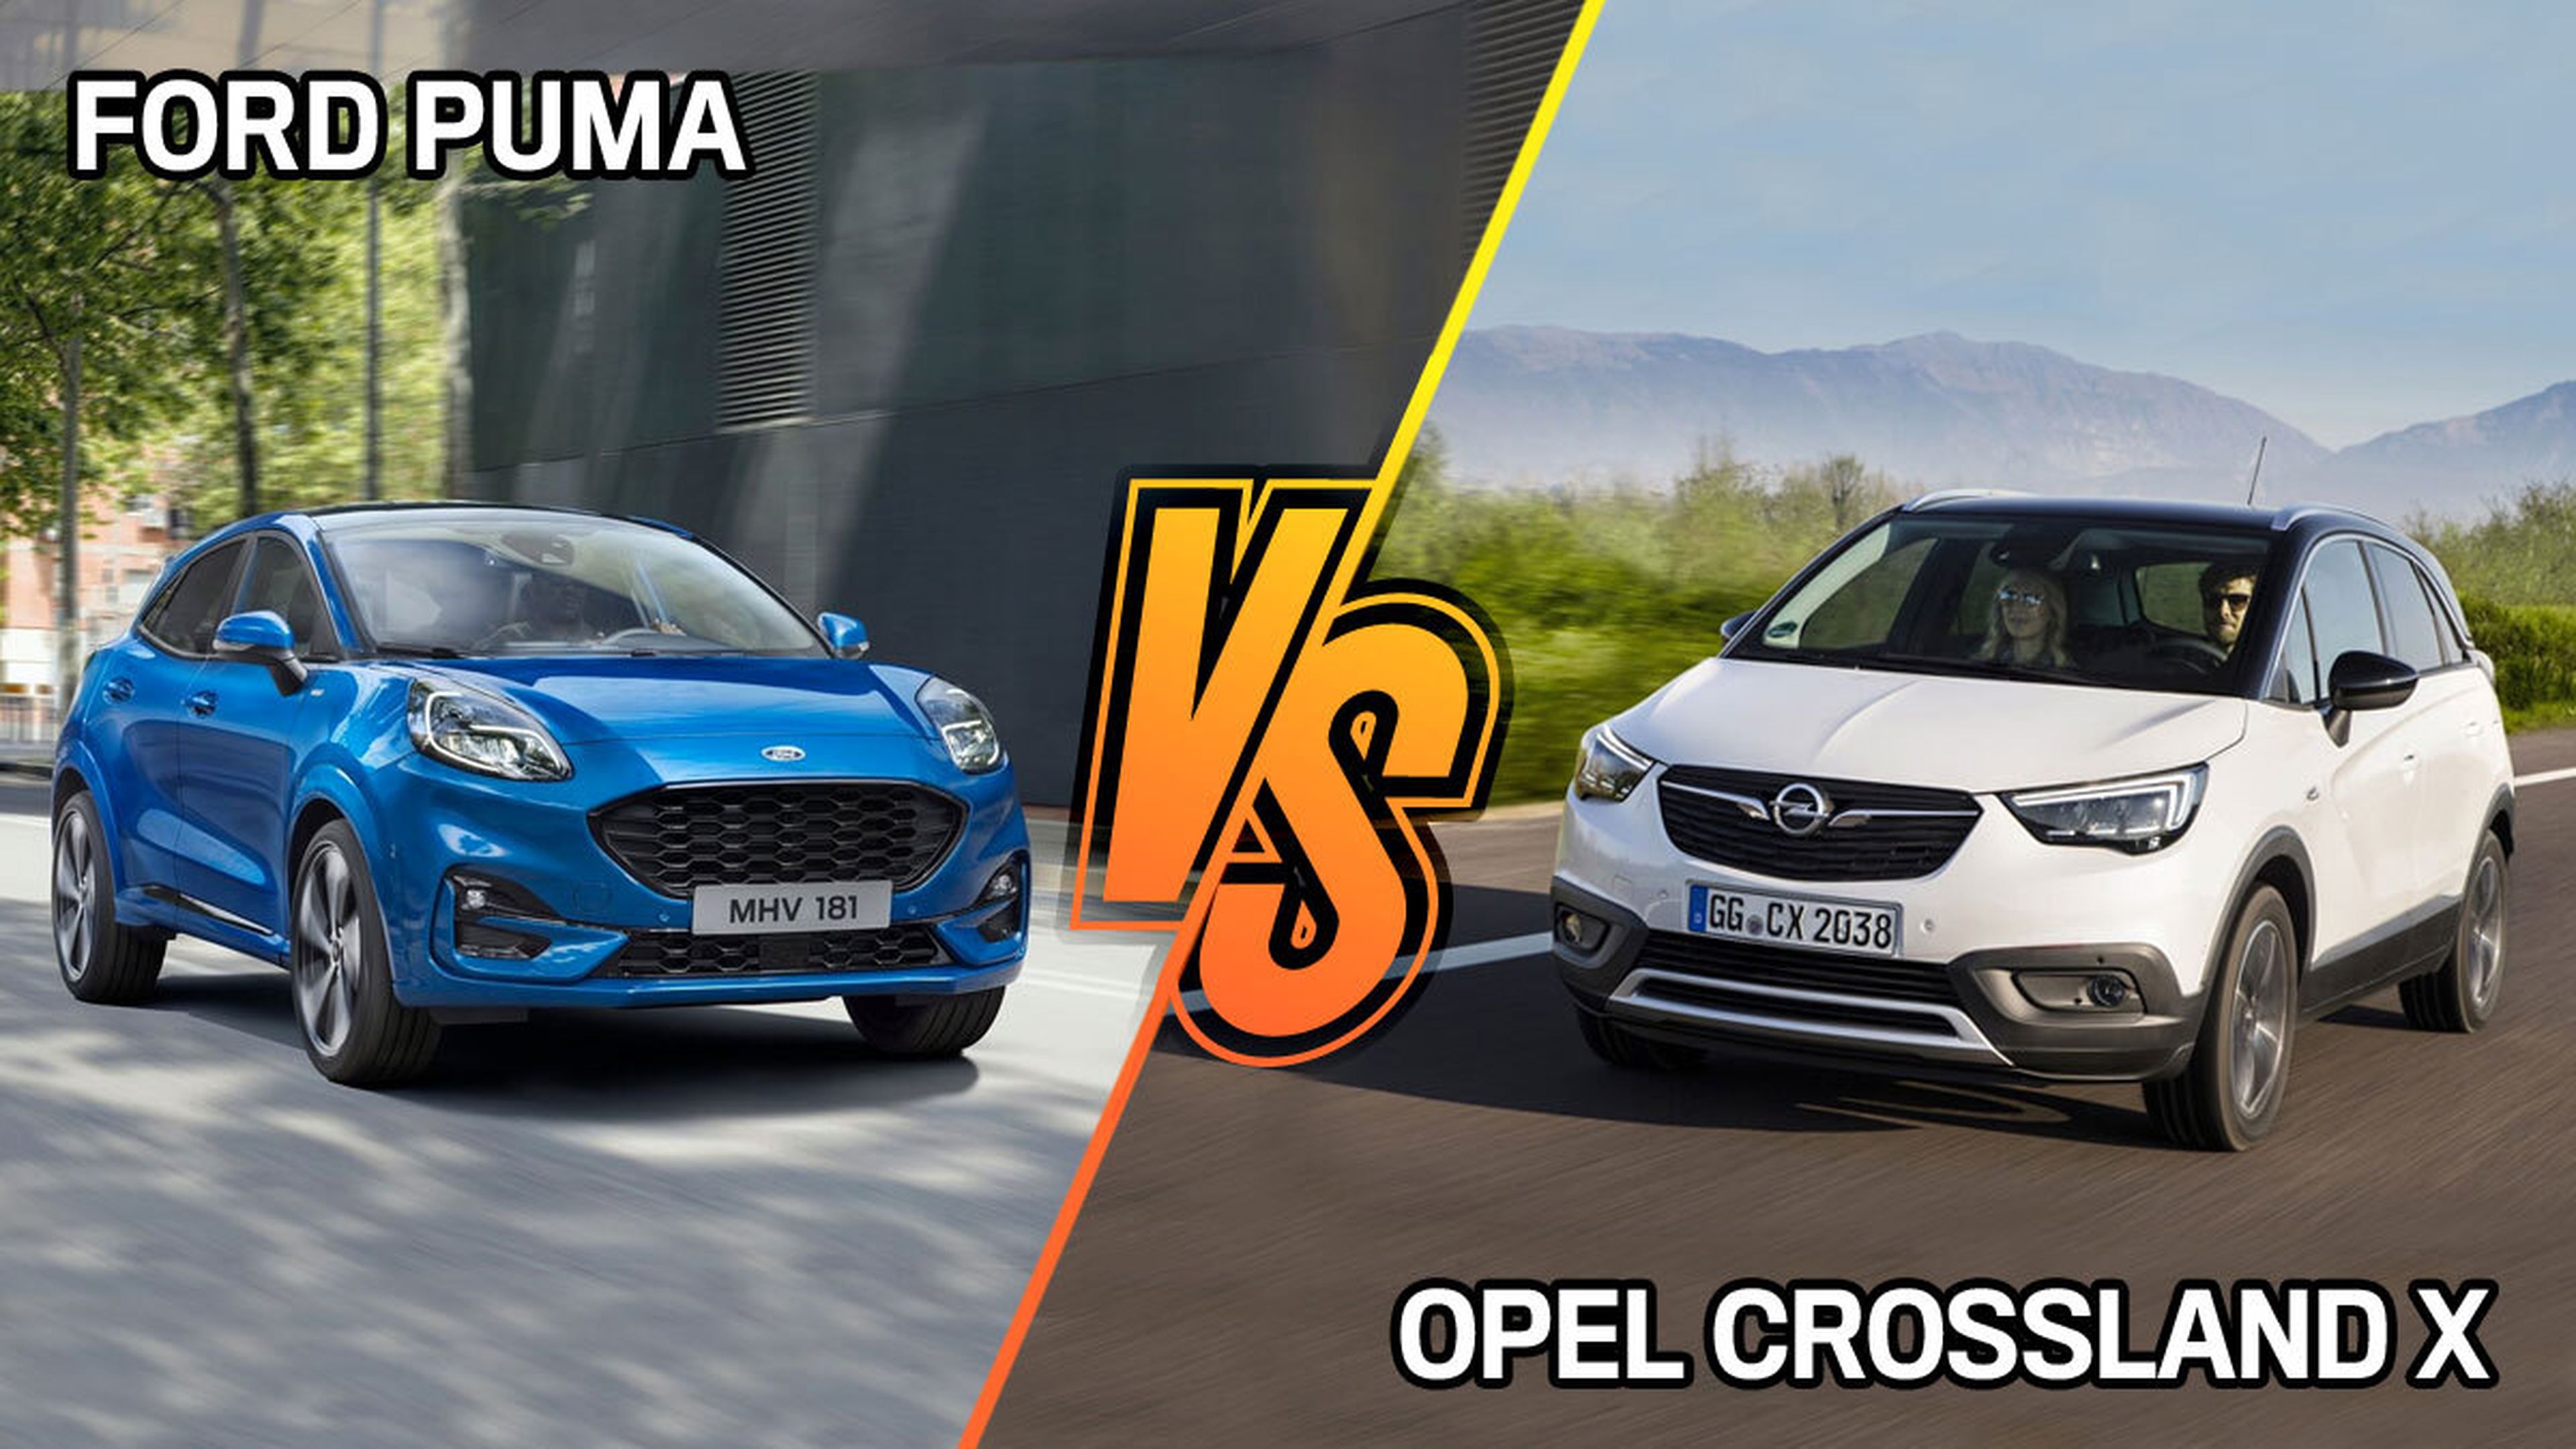 Opel Crossland X o Ford Puma, ¿cuál comprar?